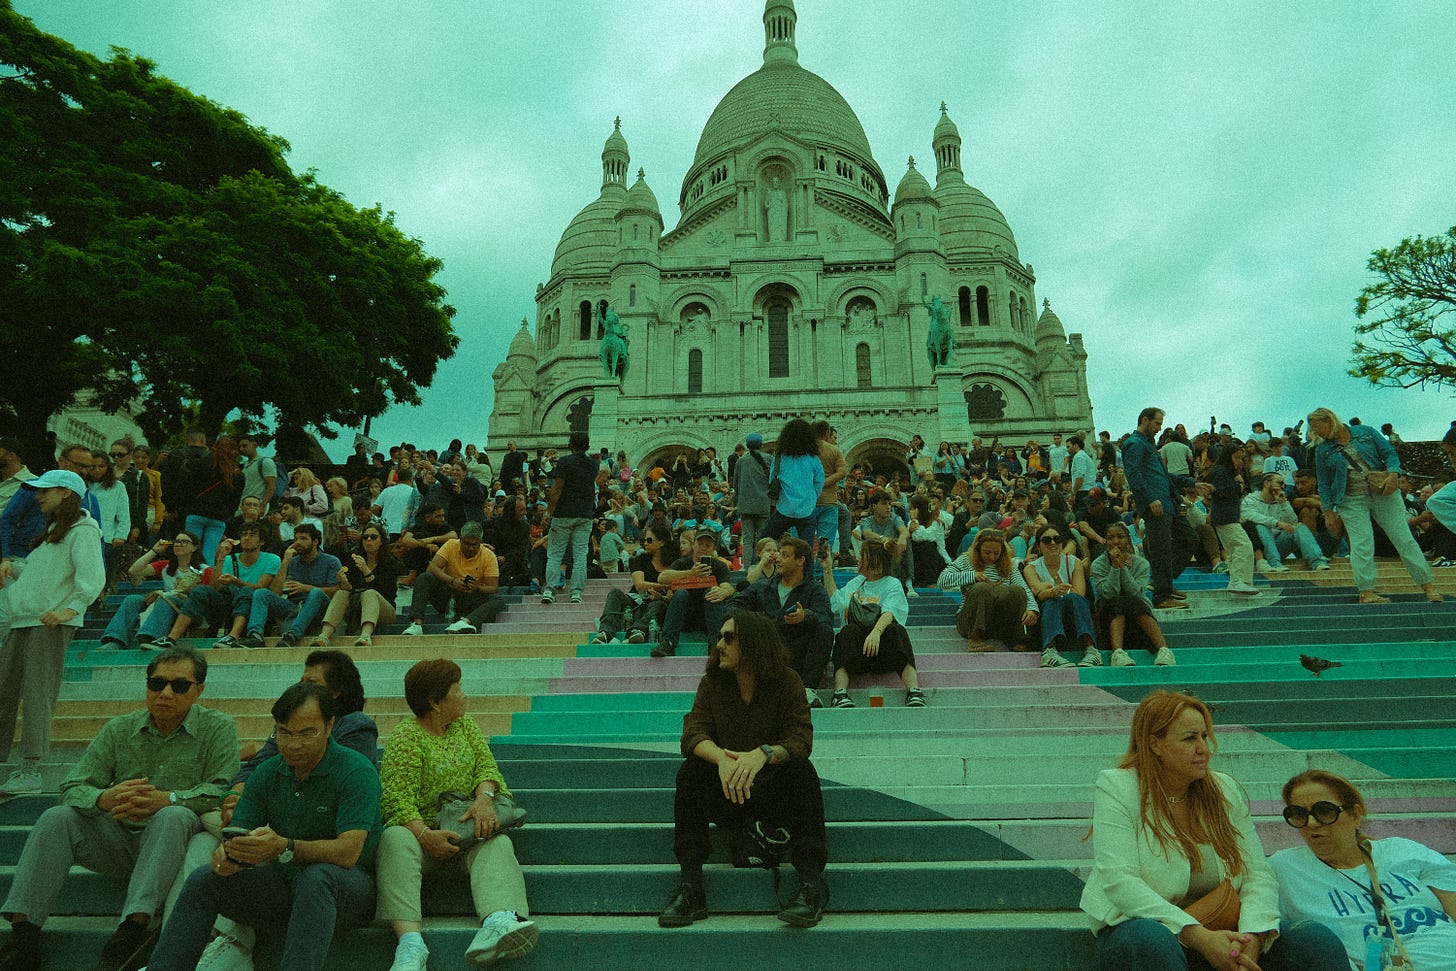 Em meio aos turistas na Basilique du Sacré-Cœur de Montmartre.